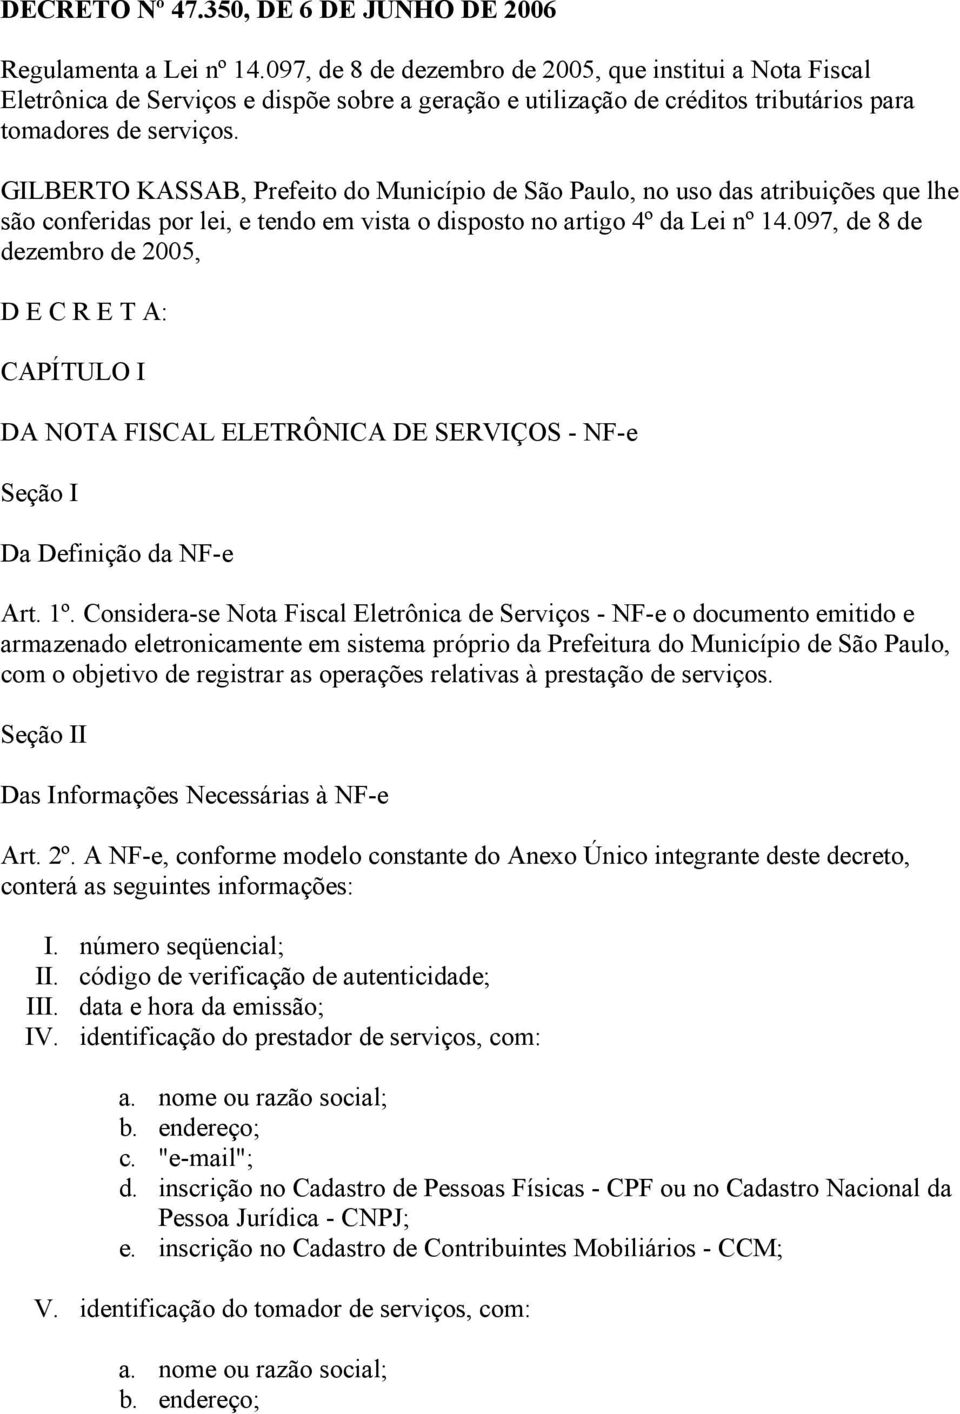 GILBERTO KASSAB, Prefeito do Município de São Paulo, no uso das atribuições que lhe são conferidas por lei, e tendo em vista o disposto no artigo 4º da Lei nº 14.